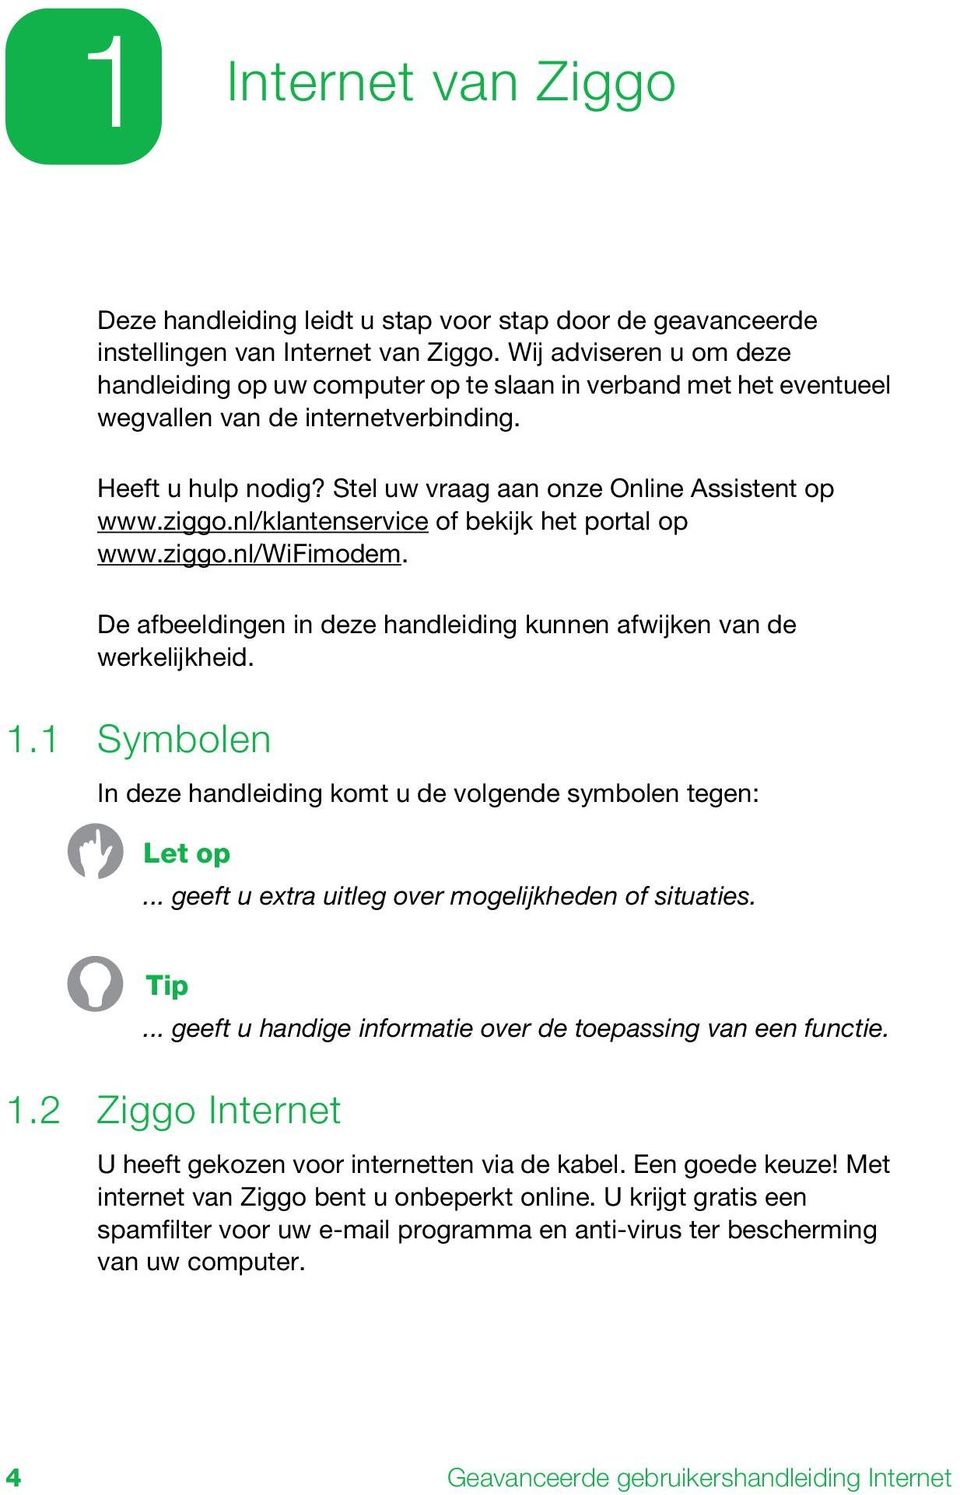 ziggo.nl/klantenservice of bekijk het portal op www.ziggo.nl/wifimodem. De afbeeldingen in deze handleiding kunnen afwijken van de werkelijkheid. 1.